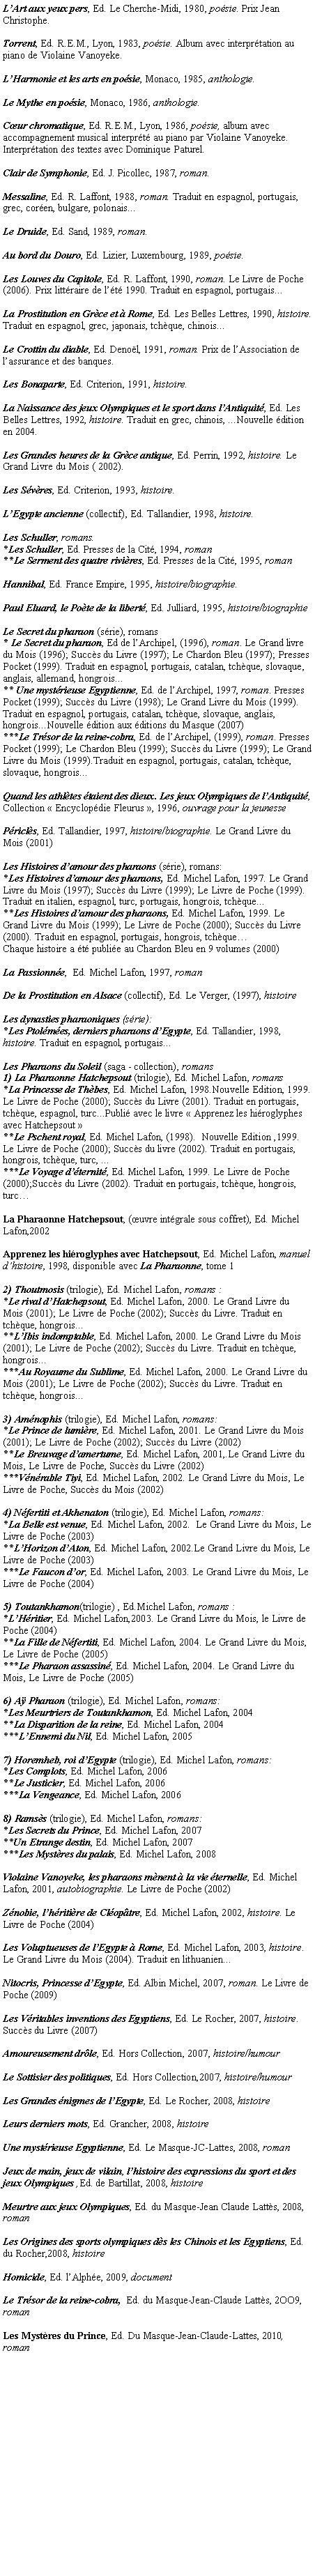 Zone de Texte: L’Art aux yeux pers, Ed. Le Cherche-Midi, 1980, poésie. Prix Jean Christophe.Torrent, Ed. R.E.M., Lyon, 1983, poésie. Album avec interprétation au piano de Violaine Vanoyeke.L’Harmonie et les arts en poésie, Monaco, 1985, anthologie.Le Mythe en poésie, Monaco, 1986, anthologie.Cœur chromatique, Ed. R.E.M., Lyon, 1986, poésie, album avec accompagnement musical interprété au piano par Violaine Vanoyeke. Interprétation des textes avec Dominique Paturel.Clair de Symphonie, Ed. J. Picollec, 1987, roman.Messaline, Ed. R. Laffont, 1988, roman. Traduit en espagnol, portugais, grec, coréen, bulgare, polonais...Le Druide, Ed. Sand, 1989, roman.Au bord du Douro, Ed. Lizier, Luxembourg, 1989, poésie.Les Louves du Capitole, Ed. R. Laffont, 1990, roman. Le Livre de Poche (2006). Prix littéraire de l’été 1990. Traduit en espagnol, portugais...La Prostitution en Grèce et à Rome, Ed. Les Belles Lettres, 1990, histoire. Traduit en espagnol, grec, japonais, tchèque, chinois...Le Crottin du diable, Ed. Denoël, 1991, roman. Prix de l’Association de l’assurance et des banques.Les Bonaparte, Ed. Criterion, 1991, histoire.La Naissance des jeux Olympiques et le sport dans l’Antiquité, Ed. Les Belles Lettres, 1992, histoire. Traduit en grec, chinois, ...Nouvelle édition en 2004.Les Grandes heures de la Grèce antique, Ed. Perrin, 1992, histoire. Le Grand Livre du Mois ( 2002).Les Sévères, Ed. Criterion, 1993, histoire.L’Egypte ancienne (collectif), Ed. Tallandier, 1998, histoire.Les Schuller, romans.*Les Schuller, Ed. Presses de la Cité, 1994, roman**Le Serment des quatre rivières, Ed. Presses de la Cité, 1995, romanHannibal, Ed. France Empire, 1995, histoire/biographie.Paul Eluard, le Poète de la liberté, Ed. Julliard, 1995, histoire/biographieLe Secret du pharaon (série), romans* Le Secret du pharaon, Ed de l’Archipel, (1996), roman. Le Grand livre du Mois (1996); Succès du Livre (1997); Le Chardon Bleu (1997); Presses Pocket (1999). Traduit en espagnol, portugais, catalan, tchèque, slovaque, anglais, allemand, hongrois...** Une mystérieuse Egyptienne, Ed. de l’Archipel, 1997, roman. Presses Pocket (1999); Succès du Livre (1998); Le Grand Livre du Mois (1999). Traduit en espagnol, portugais, catalan, tchèque, slovaque, anglais, hongrois...Nouvelle édition aux éditions du Masque (2007)***Le Trésor de la reine-cobra, Ed. de l’Archipel, (1999), roman. Presses Pocket (1999); Le Chardon Bleu (1999); Succès du Livre (1999); Le Grand Livre du Mois (1999).Traduit en espagnol, portugais, catalan, tchèque, slovaque, hongrois...Quand les athlètes étaient des dieux. Les jeux Olympiques de l’Antiquité,  Collection « Encyclopédie Fleurus », 1996, ouvrage pour la jeunessePériclès, Ed. Tallandier, 1997, histoire/biographie. Le Grand Livre du Mois (2001)Les Histoires d’amour des pharaons (série), romans:*Les Histoires d’amour des pharaons, Ed. Michel Lafon, 1997. Le Grand Livre du Mois (1997); Succès du Livre (1999); Le Livre de Poche (1999). Traduit en italien, espagnol, turc, portugais, hongrois, tchèque...**Les Histoires d’amour des pharaons, Ed. Michel Lafon, 1999. Le Grand Livre du Mois (1999); Le Livre de Poche (2000); Succès du Livre (2000). Traduit en espagnol, portugais, hongrois, tchèque… Chaque histoire a été publiée au Chardon Bleu en 9 volumes (2000)La Passionnée,  Ed. Michel Lafon, 1997, romanDe la Prostitution en Alsace (collectif), Ed. Le Verger, (1997), histoireLes dynasties pharaoniques (série):*Les Ptolémées, derniers pharaons d’Egypte, Ed. Tallandier, 1998, histoire. Traduit en espagnol, portugais...Les Pharaons du Soleil (saga - collection), romans 1) La Pharaonne Hatchepsout (trilogie), Ed. Michel Lafon, romans*La Princesse de Thèbes, Ed. Michel Lafon, 1998.Nouvelle Edition, 1999. Le Livre de Poche (2000); Succès du Livre (2001). Traduit en portugais, tchèque, espagnol, turc...Publié avec le livre « Apprenez les hiéroglyphes avec Hatchepsout »**Le Pschent royal, Ed. Michel Lafon, (1998).  Nouvelle Edition ,1999.  Le Livre de Poche (2000); Succès du livre (2002). Traduit en portugais, hongrois, tchèque, turc, ...***Le Voyage d’éternité, Ed. Michel Lafon, 1999. Le Livre de Poche (2000);Succès du Livre (2002). Traduit en portugais, tchèque, hongrois, turc…La Pharaonne Hatchepsout, (œuvre intégrale sous coffret), Ed. Michel Lafon,2002Apprenez les hiéroglyphes avec Hatchepsout, Ed. Michel Lafon, manuel d’histoire, 1998, disponible avec La Pharaonne, tome 12) Thoutmosis (trilogie), Ed. Michel Lafon, romans :*Le rival d’Hatchepsout, Ed. Michel Lafon, 2000. Le Grand Livre du Mois (2001); Le Livre de Poche (2002); Succès du Livre. Traduit en tchèque, hongrois...**L’Ibis indomptable, Ed. Michel Lafon, 2000. Le Grand Livre du Mois (2001); Le Livre de Poche (2002); Succès du Livre. Traduit en tchèque, hongrois...***Au Royaume du Sublime, Ed. Michel Lafon, 2000. Le Grand Livre du Mois (2001); Le Livre de Poche (2002); Succès du Livre. Traduit en tchèque, hongrois...3) Aménophis (trilogie), Ed. Michel Lafon, romans:*Le Prince de lumière, Ed. Michel Lafon, 2001. Le Grand Livre du Mois (2001); Le Livre de Poche (2002); Succès du Livre (2002)**Le Breuvage d’amertume, Ed. Michel Lafon, 2001,.Le Grand Livre du Mois, Le Livre de Poche, Succès du Livre (2002)***Vénérable Tiyi, Ed. Michel Lafon, 2002. Le Grand Livre du Mois, Le Livre de Poche, Succès du Mois (2002)4) Néfertiti et Akhenaton (trilogie), Ed. Michel Lafon, romans:*La Belle est venue, Ed. Michel Lafon, 2002.  Le Grand Livre du Mois, Le Livre de Poche (2003)**L’Horizon d’Aton, Ed. Michel Lafon, 2002.Le Grand Livre du Mois, Le Livre de Poche (2003)***Le Faucon d’or, Ed. Michel Lafon, 2003. Le Grand Livre du Mois, Le Livre de Poche (2004)5) Toutankhamon(trilogie) , Ed.Michel Lafon, romans :*L’Héritier, Ed. Michel Lafon,2003. Le Grand Livre du Mois, le Livre de Poche (2004)**La Fille de Néfertiti, Ed. Michel Lafon, 2004. Le Grand Livre du Mois, Le Livre de Poche (2005)***Le Pharaon assassiné, Ed. Michel Lafon, 2004. Le Grand Livre du Mois, Le Livre de Poche (2005)6) Aÿ Pharaon (trilogie), Ed. Michel Lafon, romans:*Les Meurtriers de Toutankhamon, Ed. Michel Lafon, 2004**La Disparition de la reine, Ed. Michel Lafon, 2004***L’Ennemi du Nil, Ed. Michel Lafon, 20057) Horemheb, roi d’Egypte (trilogie), Ed. Michel Lafon, romans:*Les Complots, Ed. Michel Lafon, 2006**Le Justicier, Ed. Michel Lafon, 2006***La Vengeance, Ed. Michel Lafon, 20068) Ramsès (trilogie), Ed. Michel Lafon, romans:*Les Secrets du Prince, Ed. Michel Lafon, 2007**Un Etrange destin, Ed. Michel Lafon, 2007***Les Mystères du palais, Ed. Michel Lafon, 2008Violaine Vanoyeke, les pharaons mènent à la vie éternelle, Ed. Michel Lafon, 2001, autobiographie. Le Livre de Poche (2002)Zénobie, l’héritière de Cléopâtre, Ed. Michel Lafon, 2002, histoire. Le Livre de Poche (2004)Les Voluptueuses de l’Egypte à Rome, Ed. Michel Lafon, 2003, histoire. Le Grand Livre du Mois (2004). Traduit en lithuanien...Nitocris, Princesse d’Egypte, Ed. Albin Michel, 2007, roman. Le Livre de Poche (2009)Les Véritables inventions des Egyptiens, Ed. Le Rocher, 2007, histoire. Succès du Livre (2007)Amoureusement drôle, Ed. Hors Collection, 2007, histoire/humourLe Sottisier des politiques, Ed. Hors Collection,2007, histoire/humourLes Grandes énigmes de l’Egypte, Ed. Le Rocher, 2008, histoireLeurs derniers mots, Ed. Grancher, 2008, histoireUne mystérieuse Egyptienne, Ed. Le Masque-JC-Lattes, 2008, roman   Jeux de main, jeux de vilain, l’histoire des expressions du sport et des jeux Olympiques ,Ed. de Bartillat, 2008, histoireMeurtre aux jeux Olympiques, Ed. du Masque-Jean Claude Lattès, 2008, romanLes Origines des sports olympiques dès les Chinois et les Egyptiens, Ed. du Rocher,2008, histoireHomicide, Ed. l’Alphée, 2009, documentLe Trésor de la reine-cobra,  Ed. du Masque-Jean-Claude Lattès, 2OO9, romanLes Mystères du Prince, Ed. Du Masque-Jean-Claude-Lattes, 2010, roman